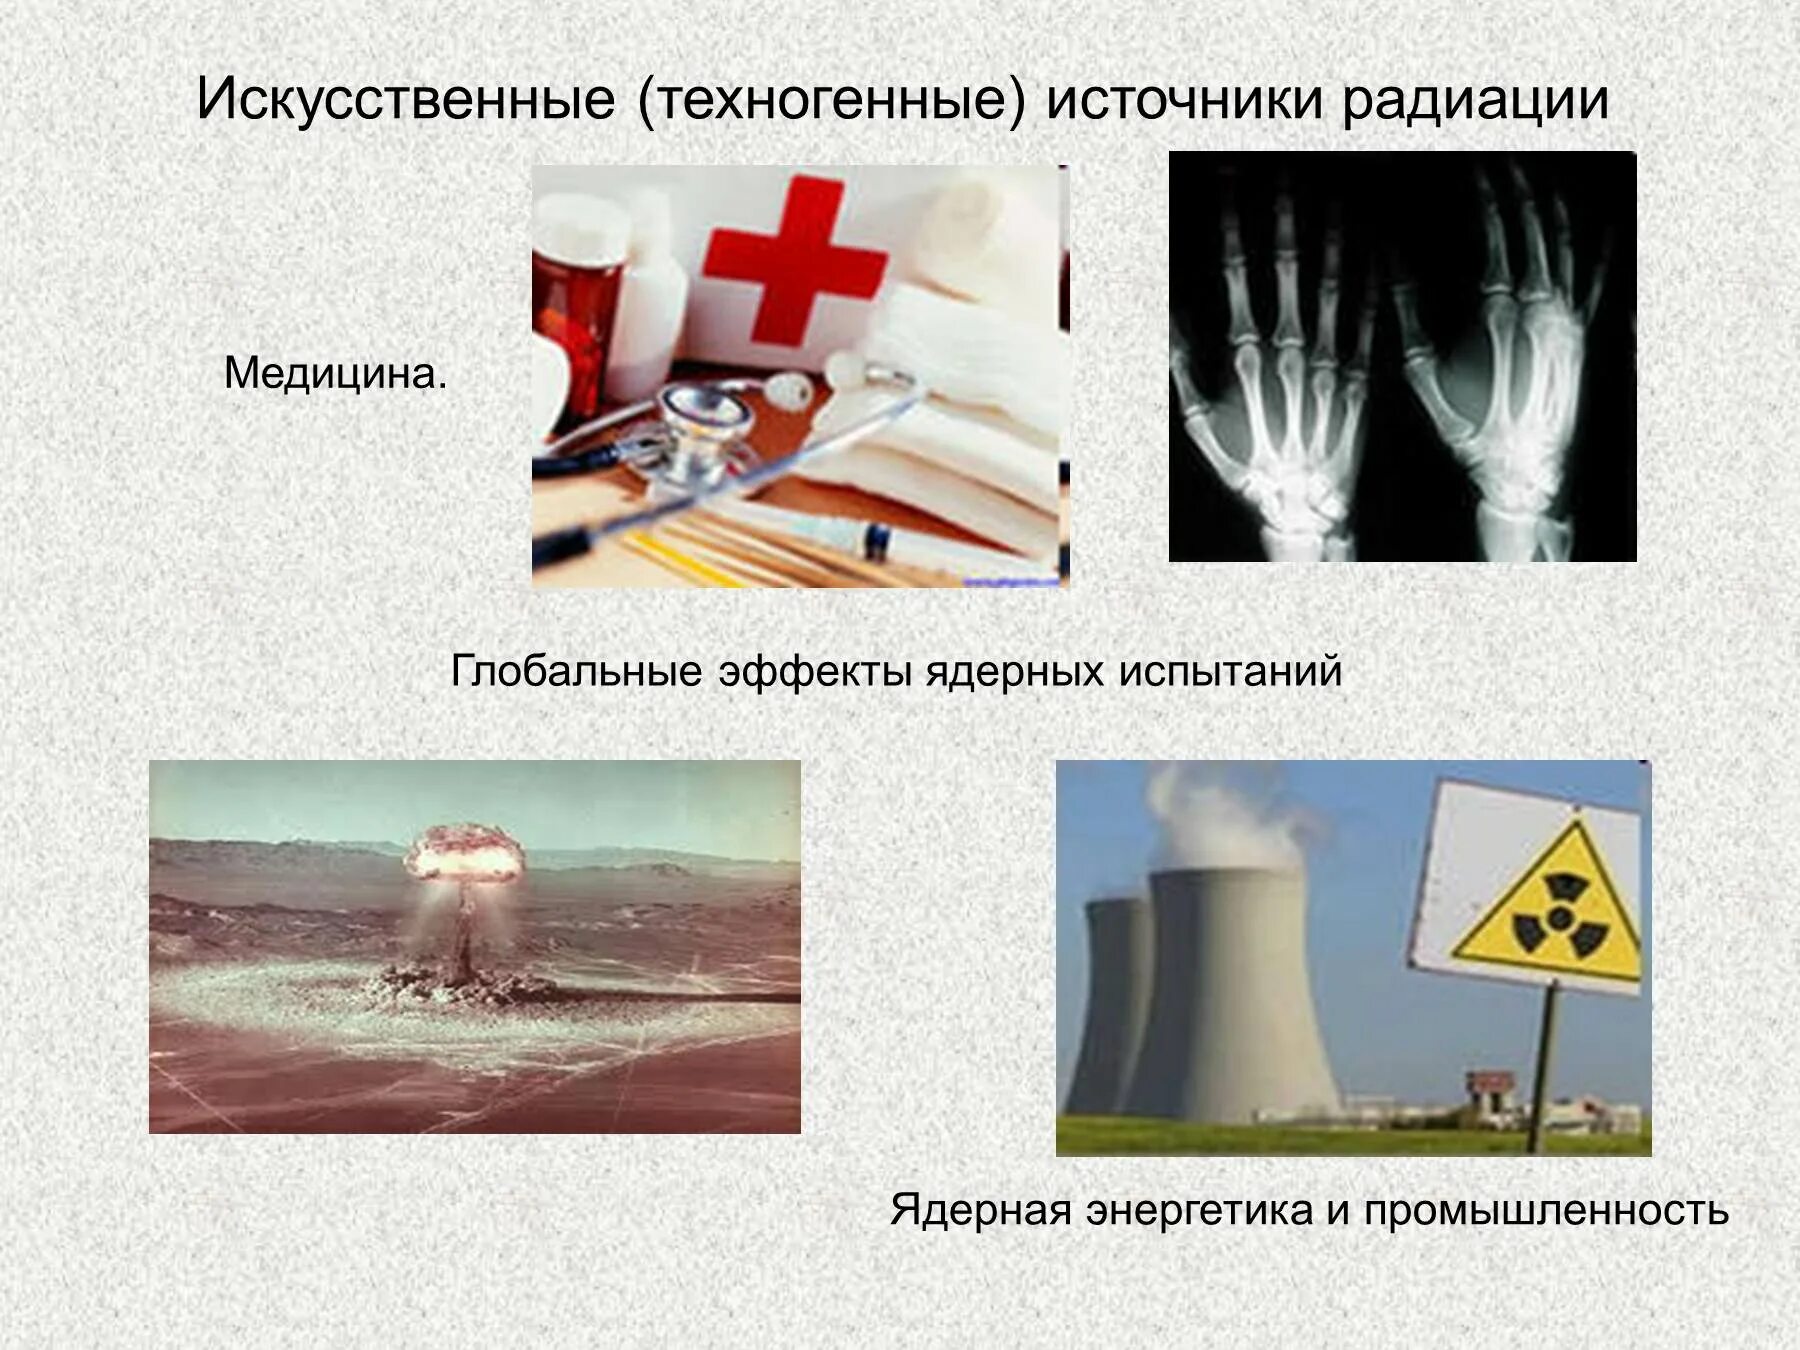 Применение радиоактивности в медицине. Искусственные источники излучения. Искусственные источники излучения радиации. Источники радиации ОБЖ. Техногенные источники радиации.